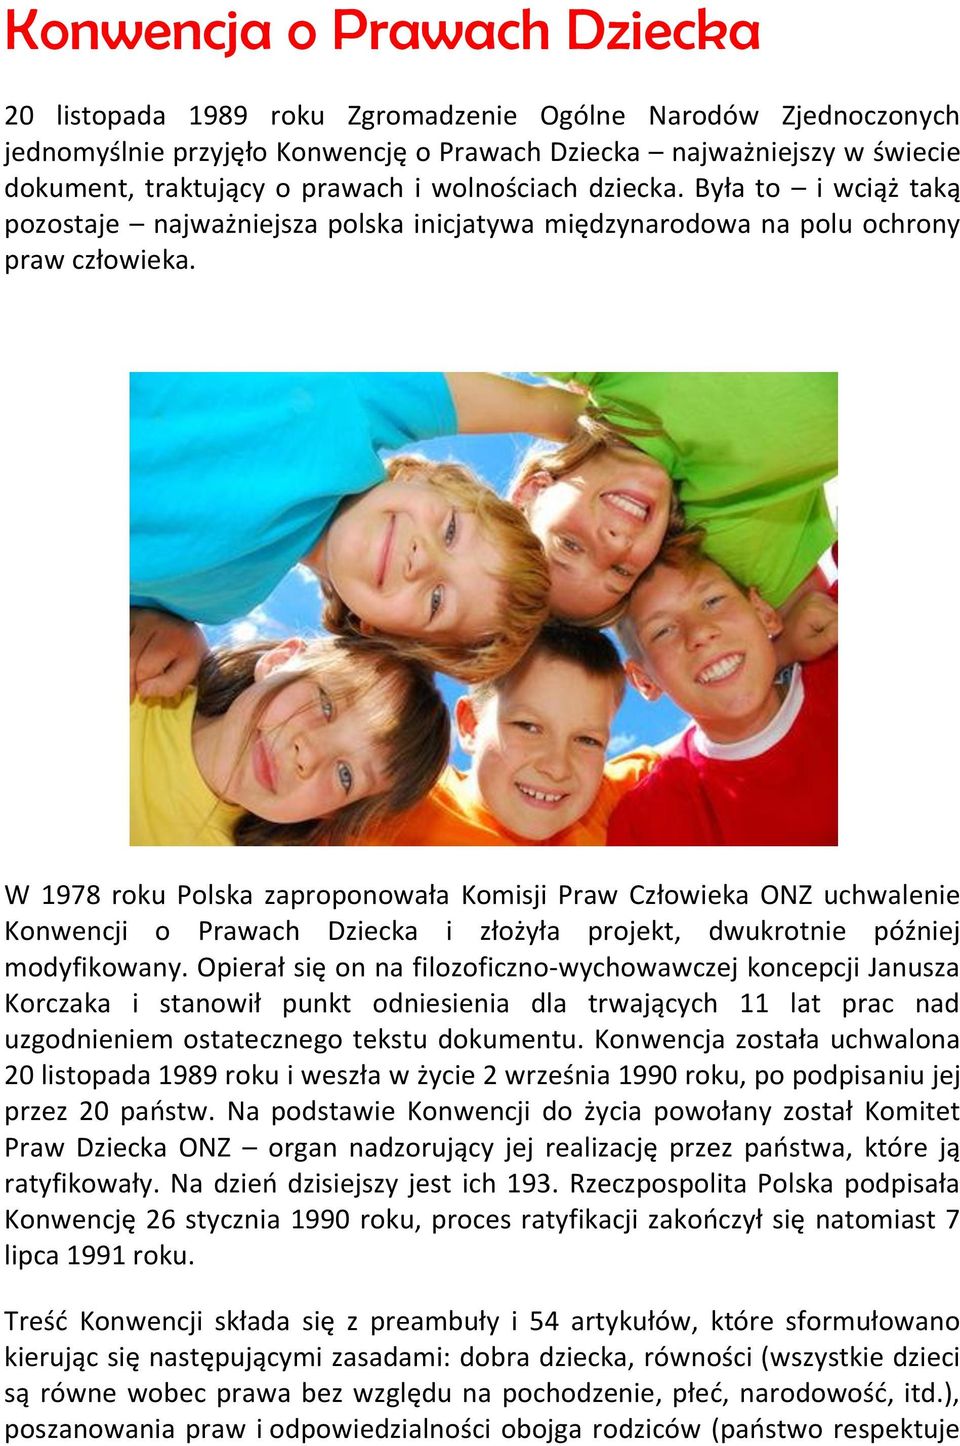 W 1978 roku Polska zaproponowała Komisji Praw Człowieka ONZ uchwalenie Konwencji o Prawach Dziecka i złożyła projekt, dwukrotnie później modyfikowany.